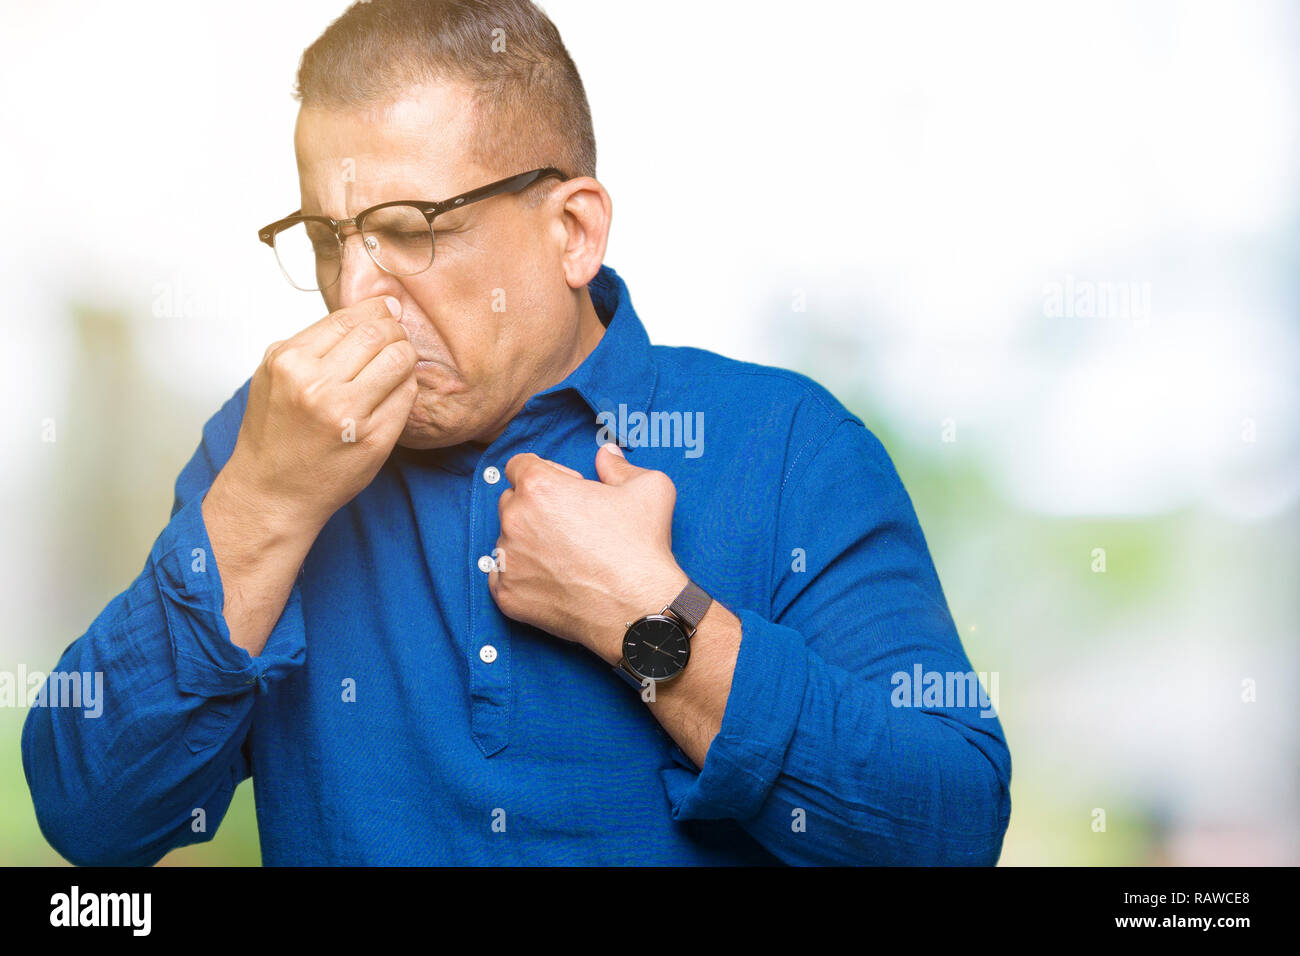 Mittleres Alter arabischer Mann Brille über isolierte Hintergrund riechen etwas stinkig und ekelhaft, unerträglichen Geruch, Atem wird mit den Fingern Stockfoto